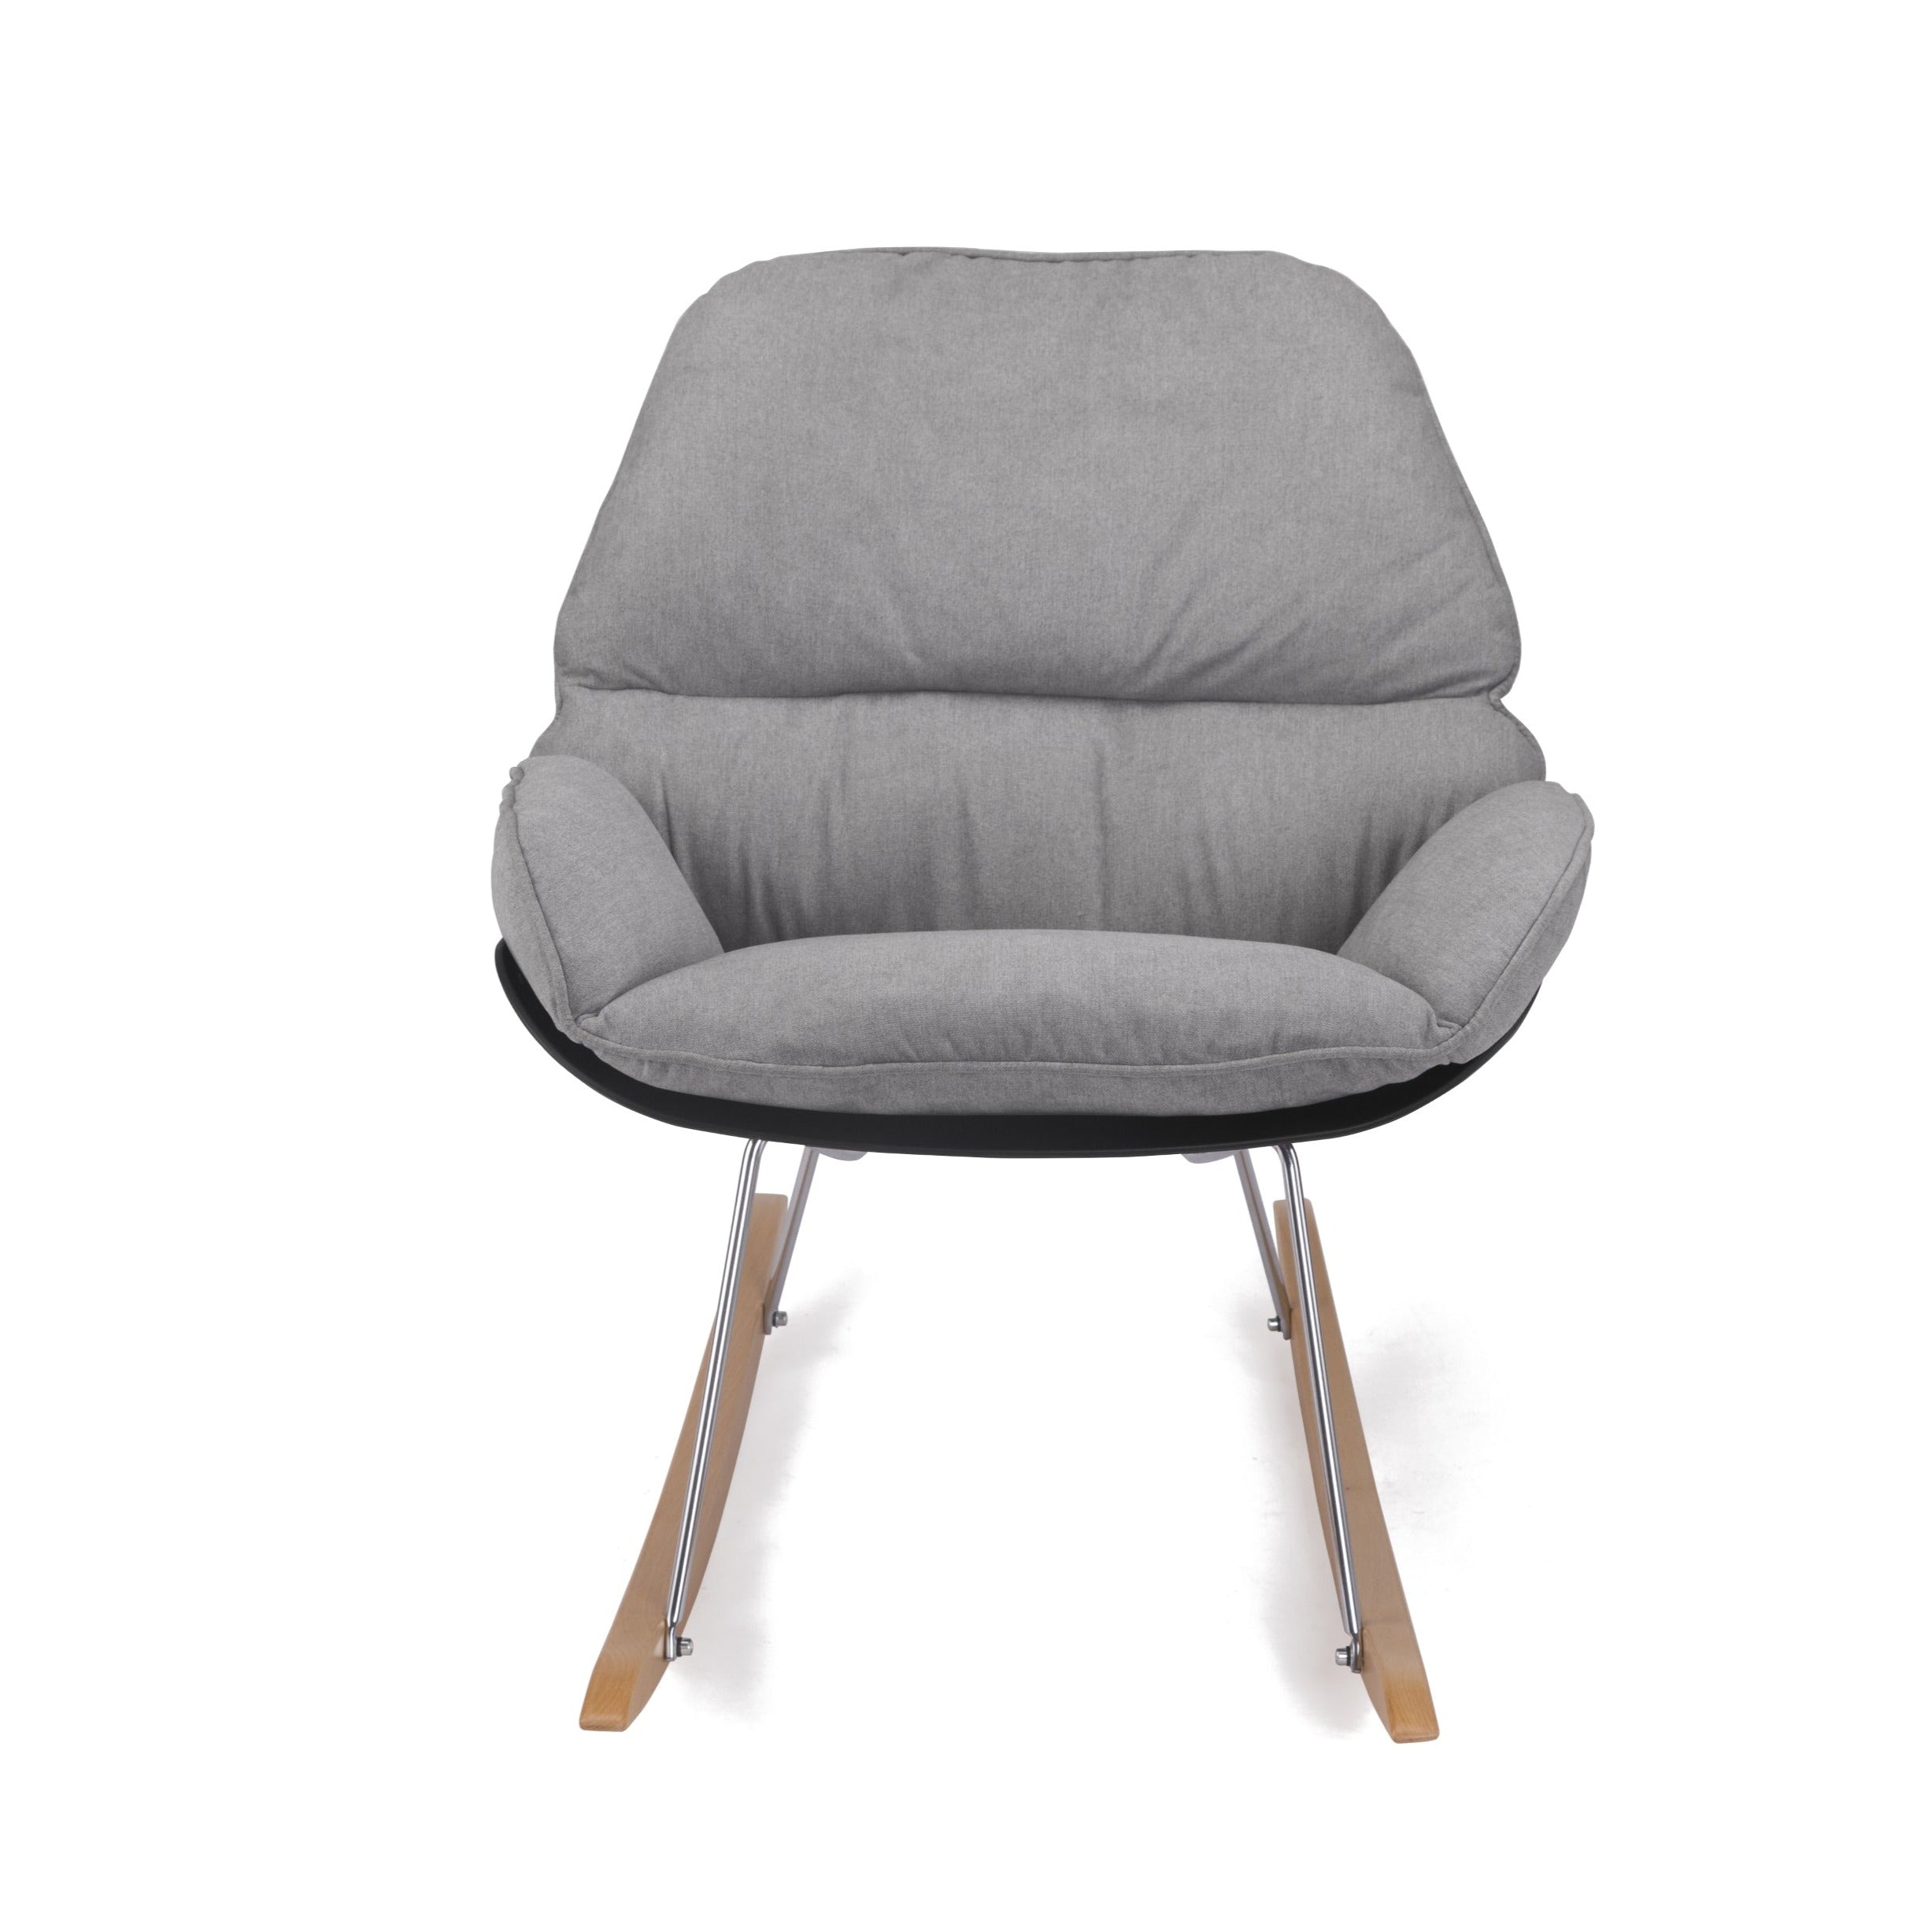 Bay - Lounge chair